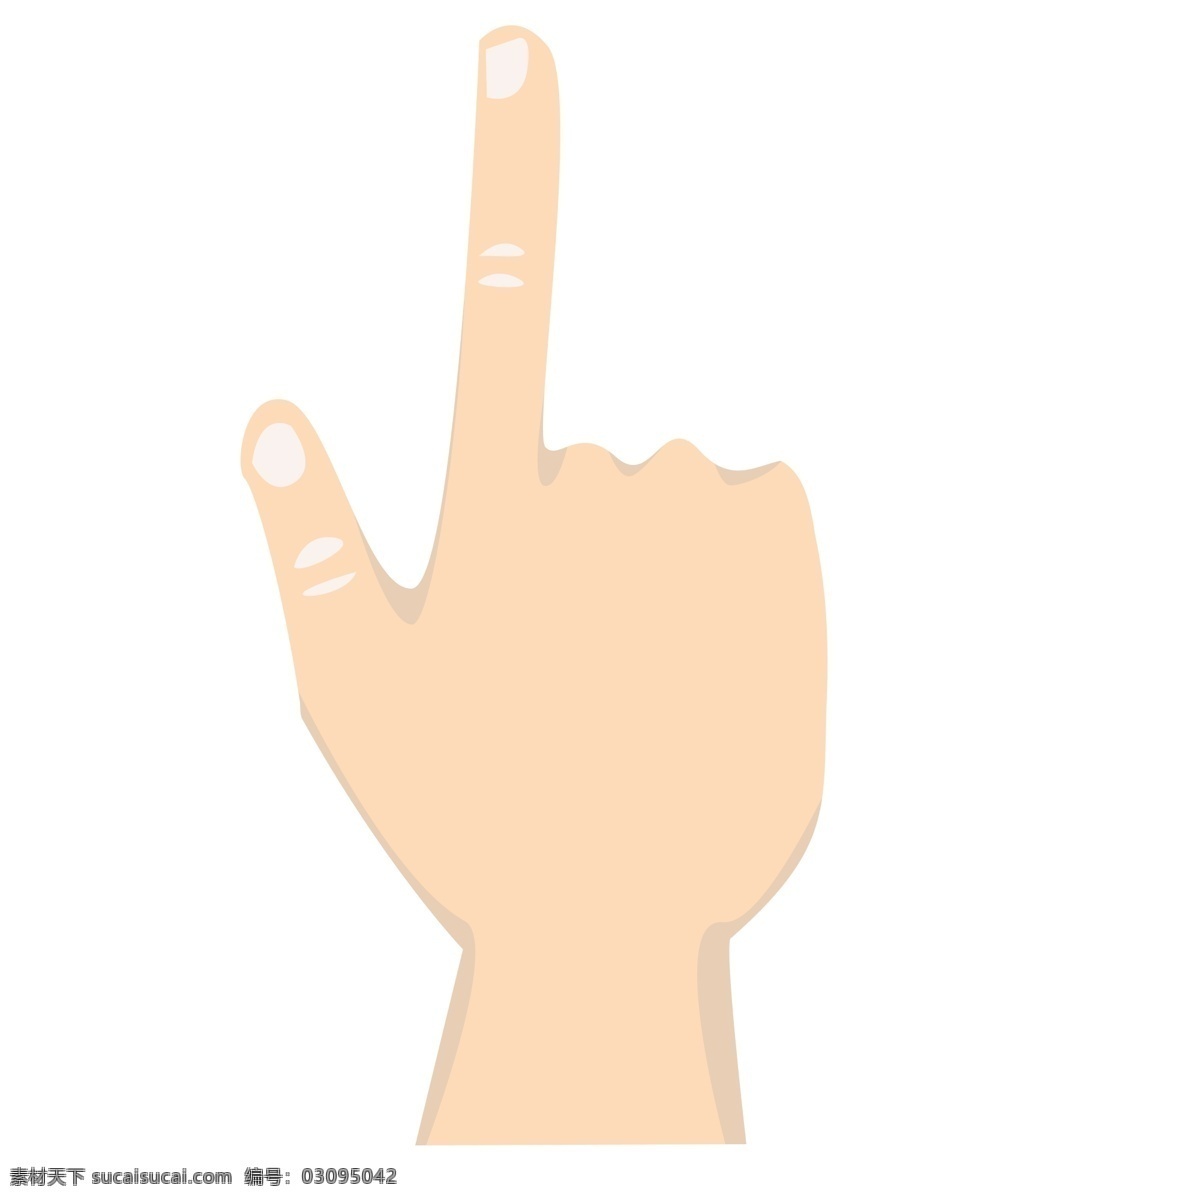 手部 动作 二 卡通 矢量 创意 手部动作二 伸食指 竖大拇指 商业 指示 指引 工作 手语